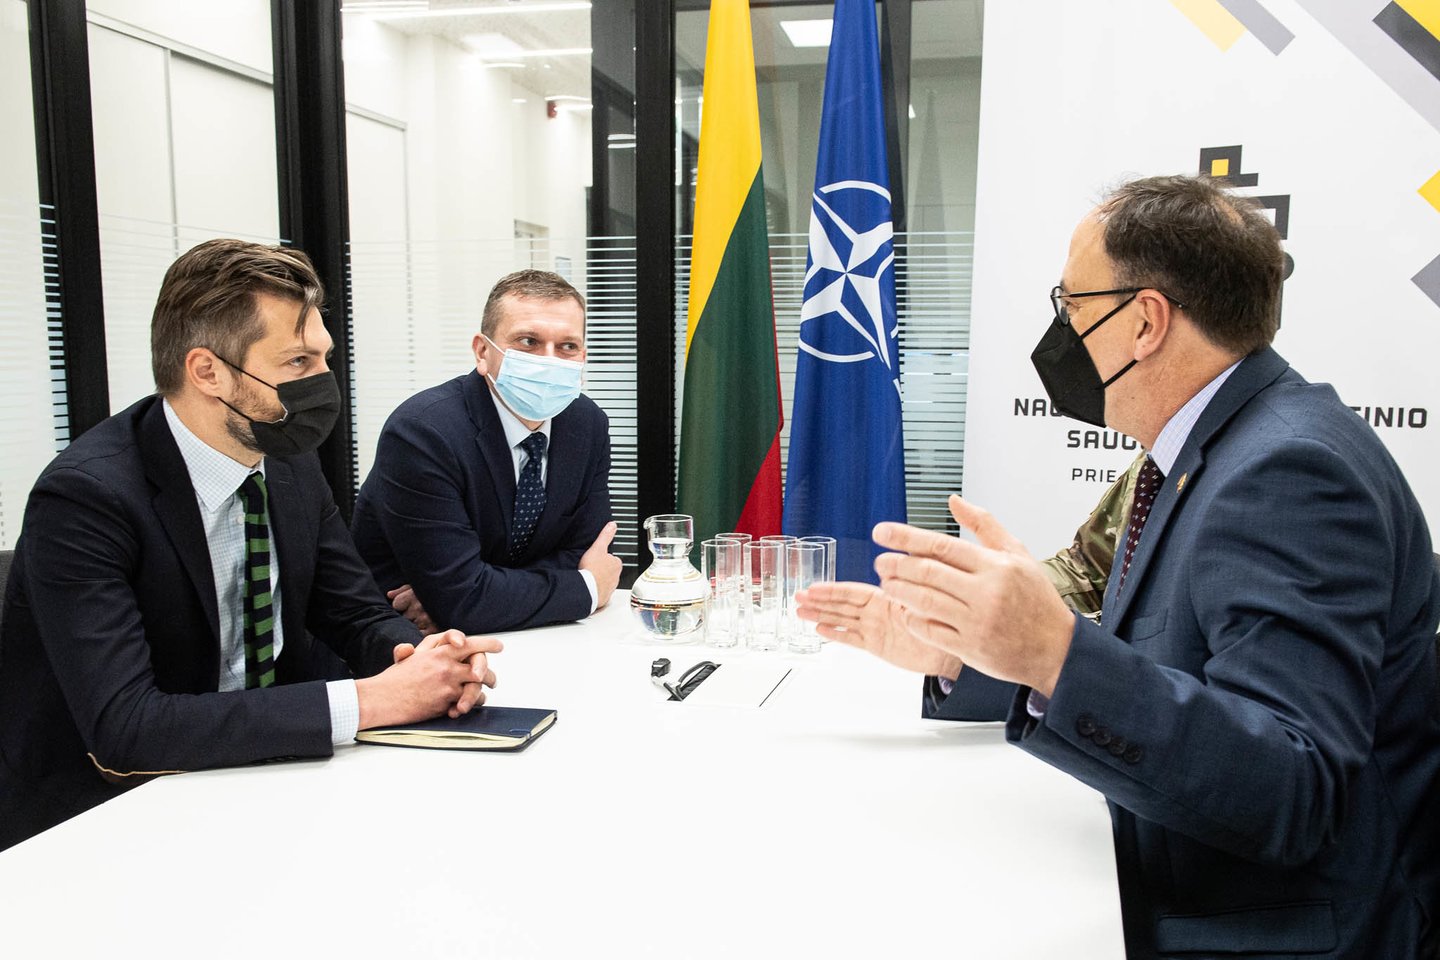  Darbinių susitikimų su Lietuvos Nacionalinio kibernetinio saugumo centro (NKSC) specialistais metu buvo dalinamasi patirtimi kibernetinės gynybos ir grėsmių vertinimo srityje.<br> KMA / A. Pliadžio nuotr.